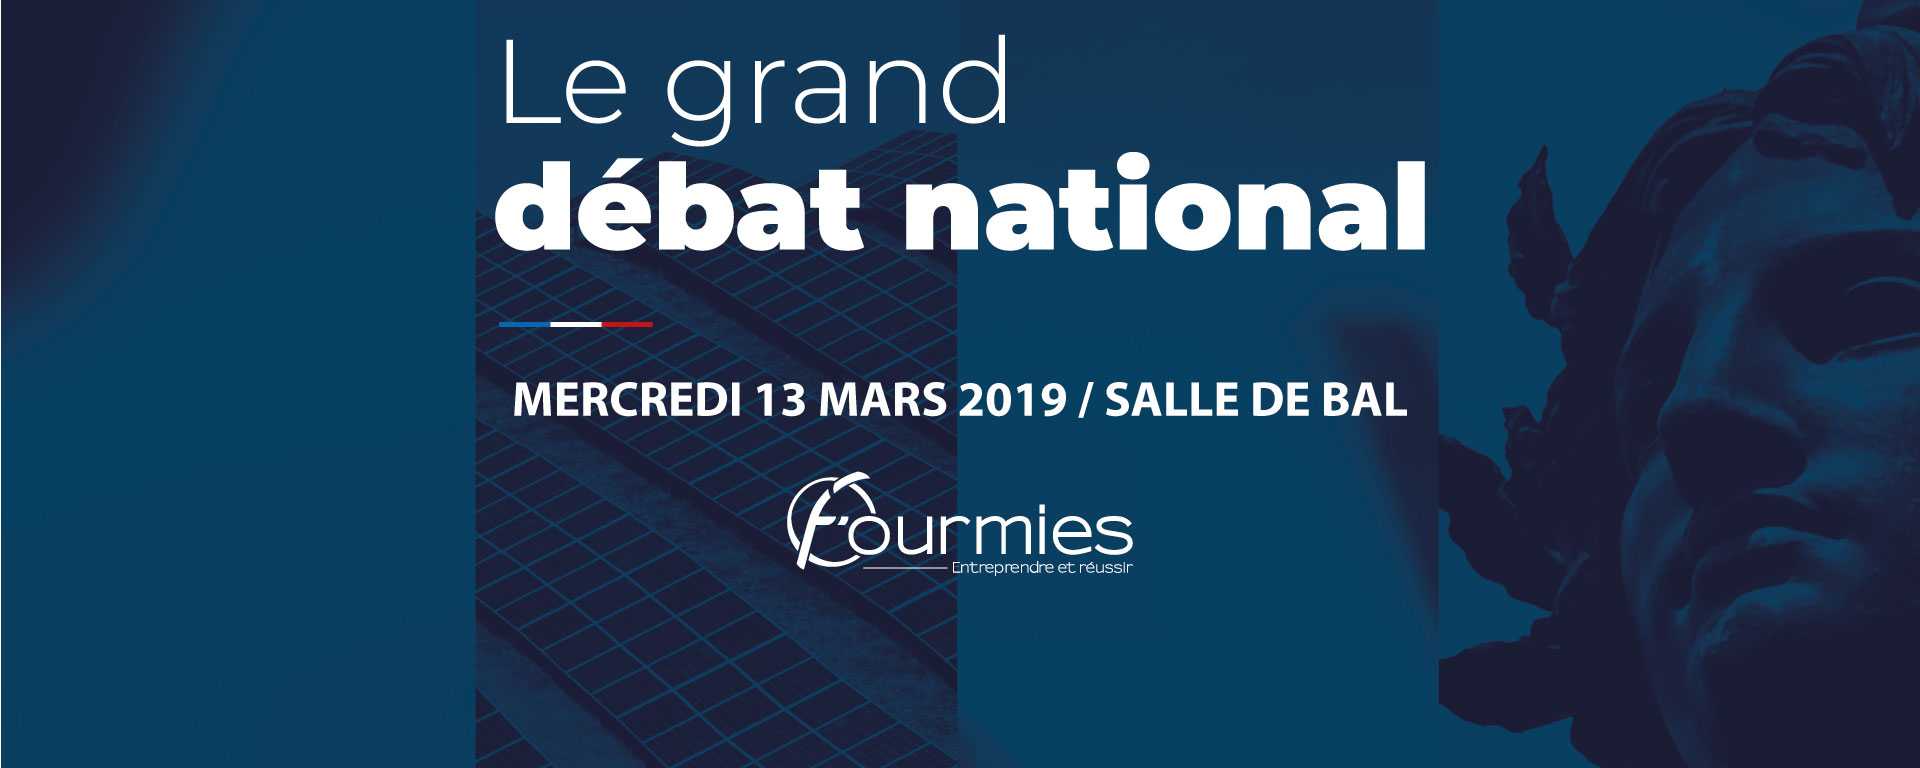 La Ville de Fourmies organise le Grand Débat National le mercredi 13 mars 2019 à la salle de bal du Théâtre Jean Ferrat de Fourmies.